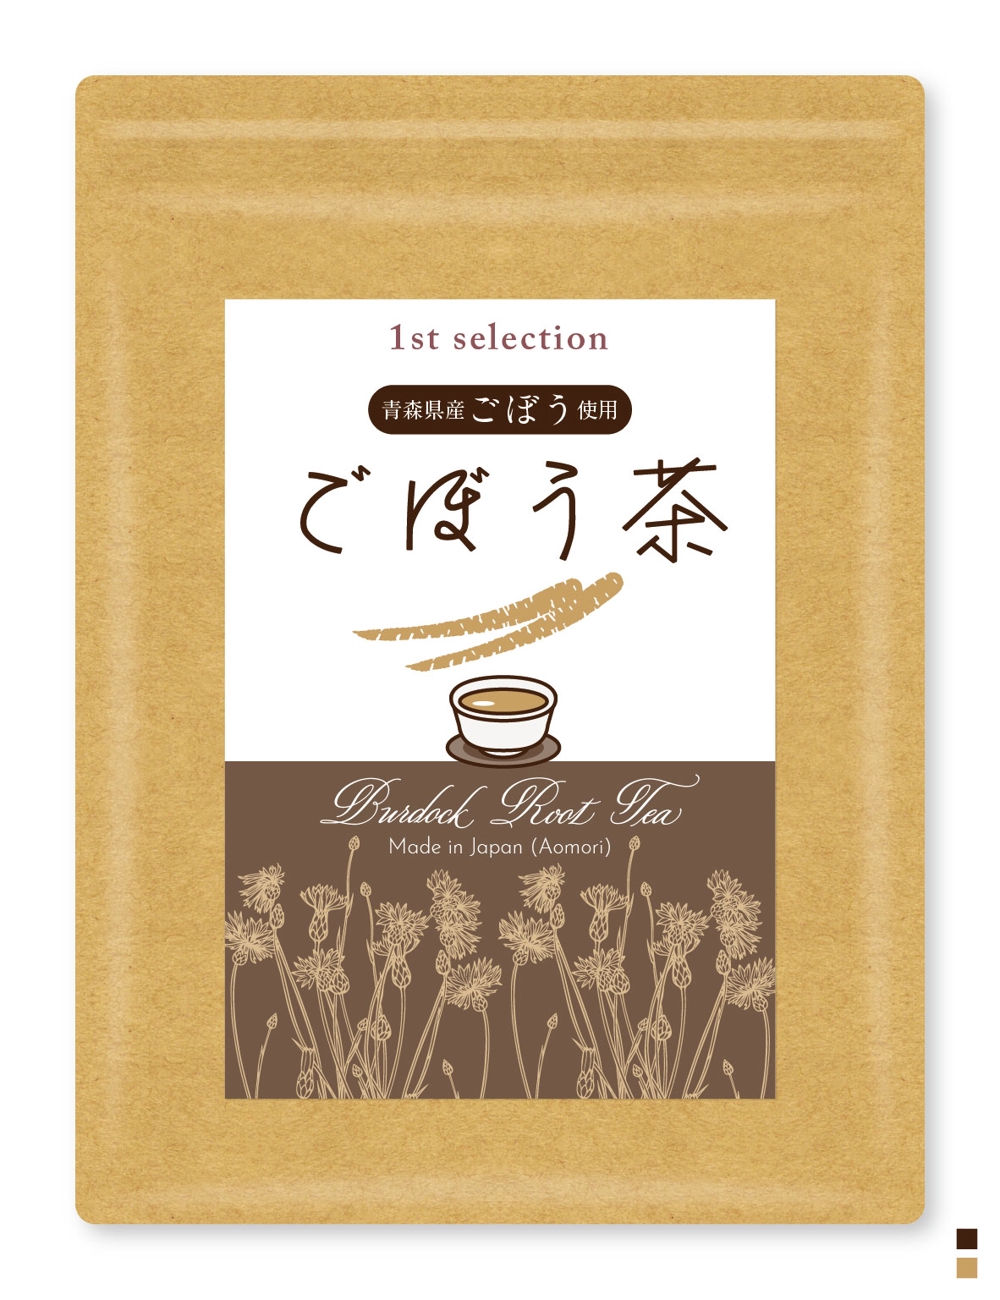 ごぼう茶の商品ラベルのデザイン